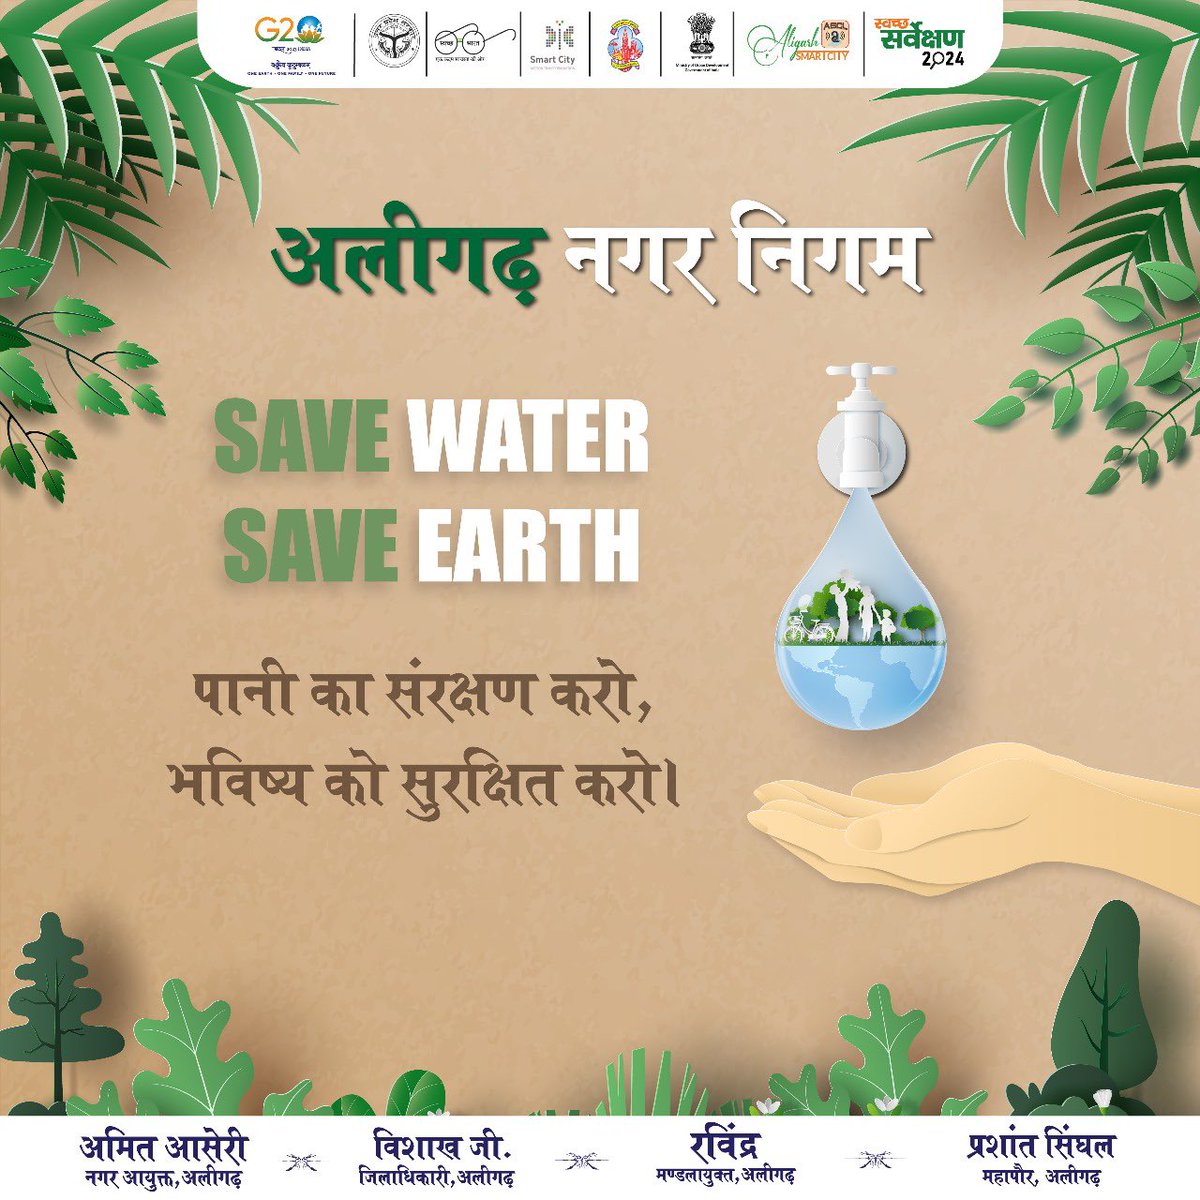 अलीगढ़ नगर निगम: जल संरक्षण, सबका साथ!
.
.
.
#जल_बचाओ #AligarhNagarNigam #mohua #savewater #aligarh #aligarhsmartcity #SmartCityKiSmartKahani